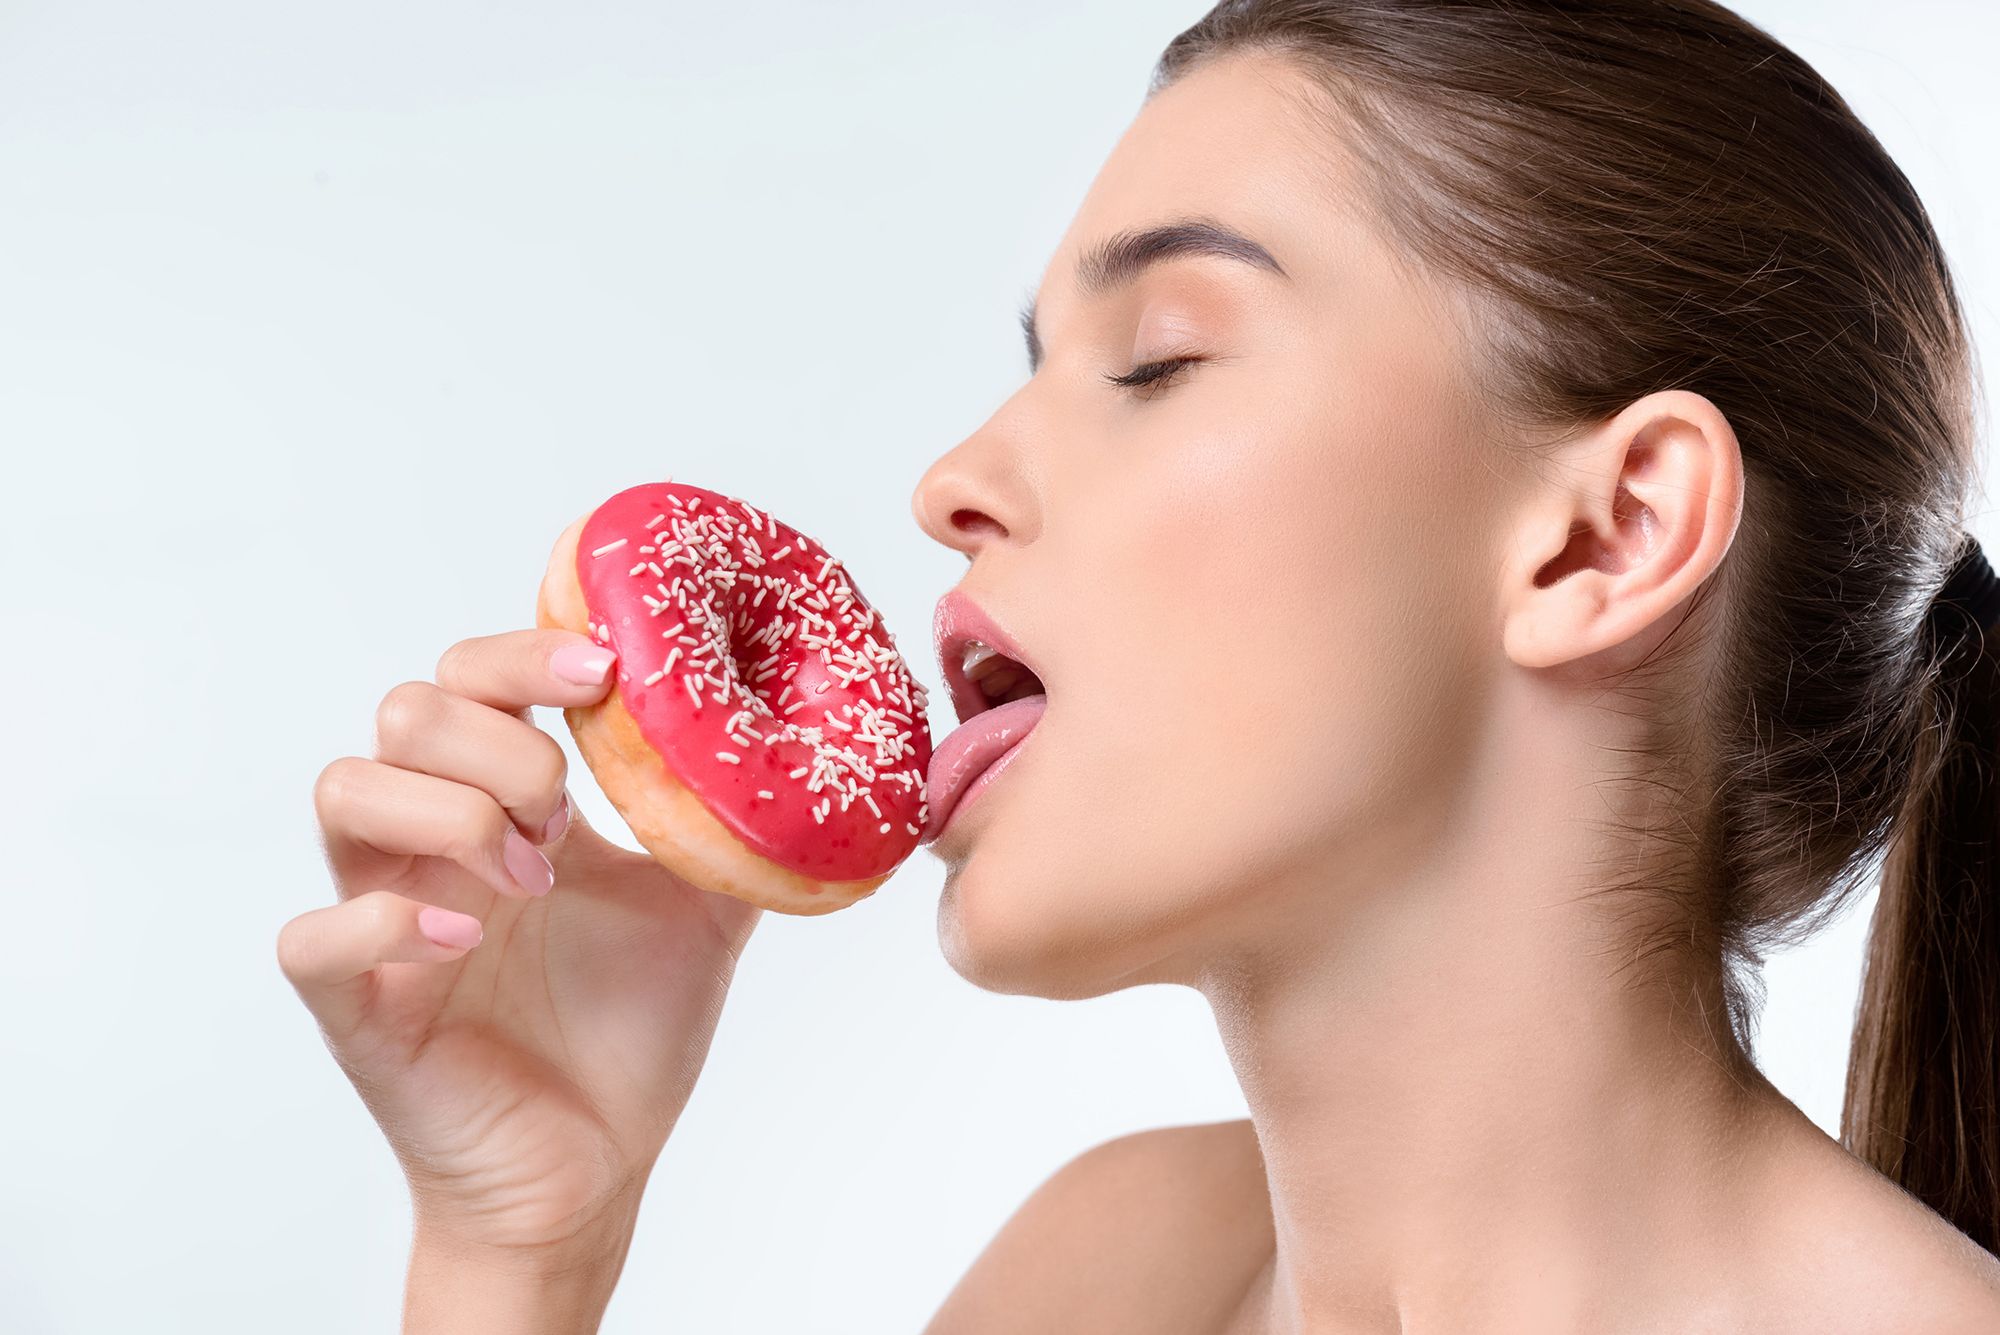 Frau leckt lustvoll an einem pinkglasierten Donut mit Streuseln